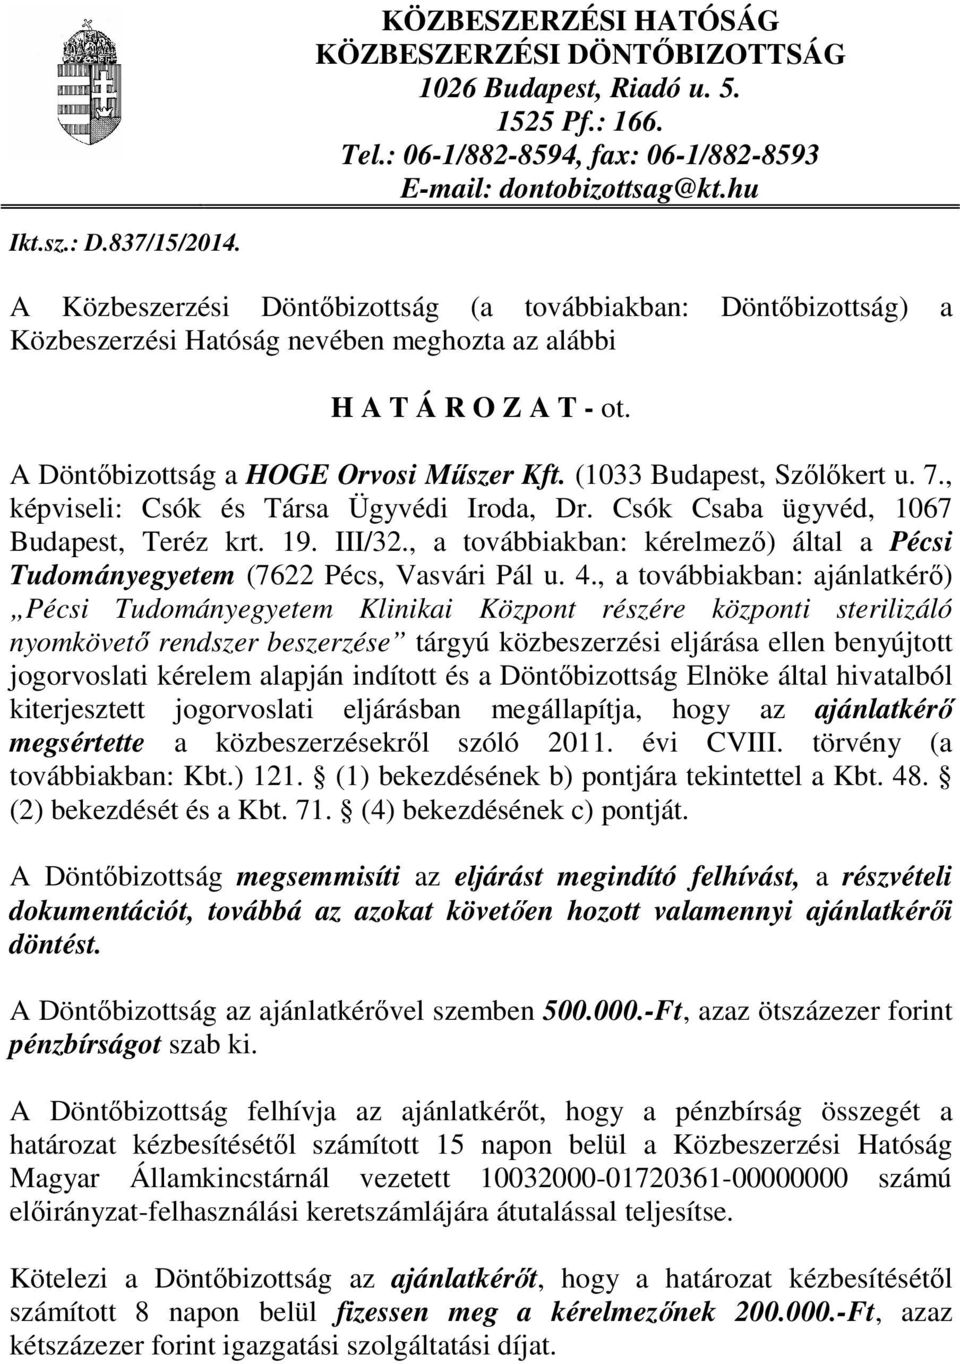 (1033 Budapest, Szőlőkert u. 7., képviseli: Csók és Társa Ügyvédi Iroda, Dr. Csók Csaba ügyvéd, 1067 Budapest, Teréz krt. 19. III/32.